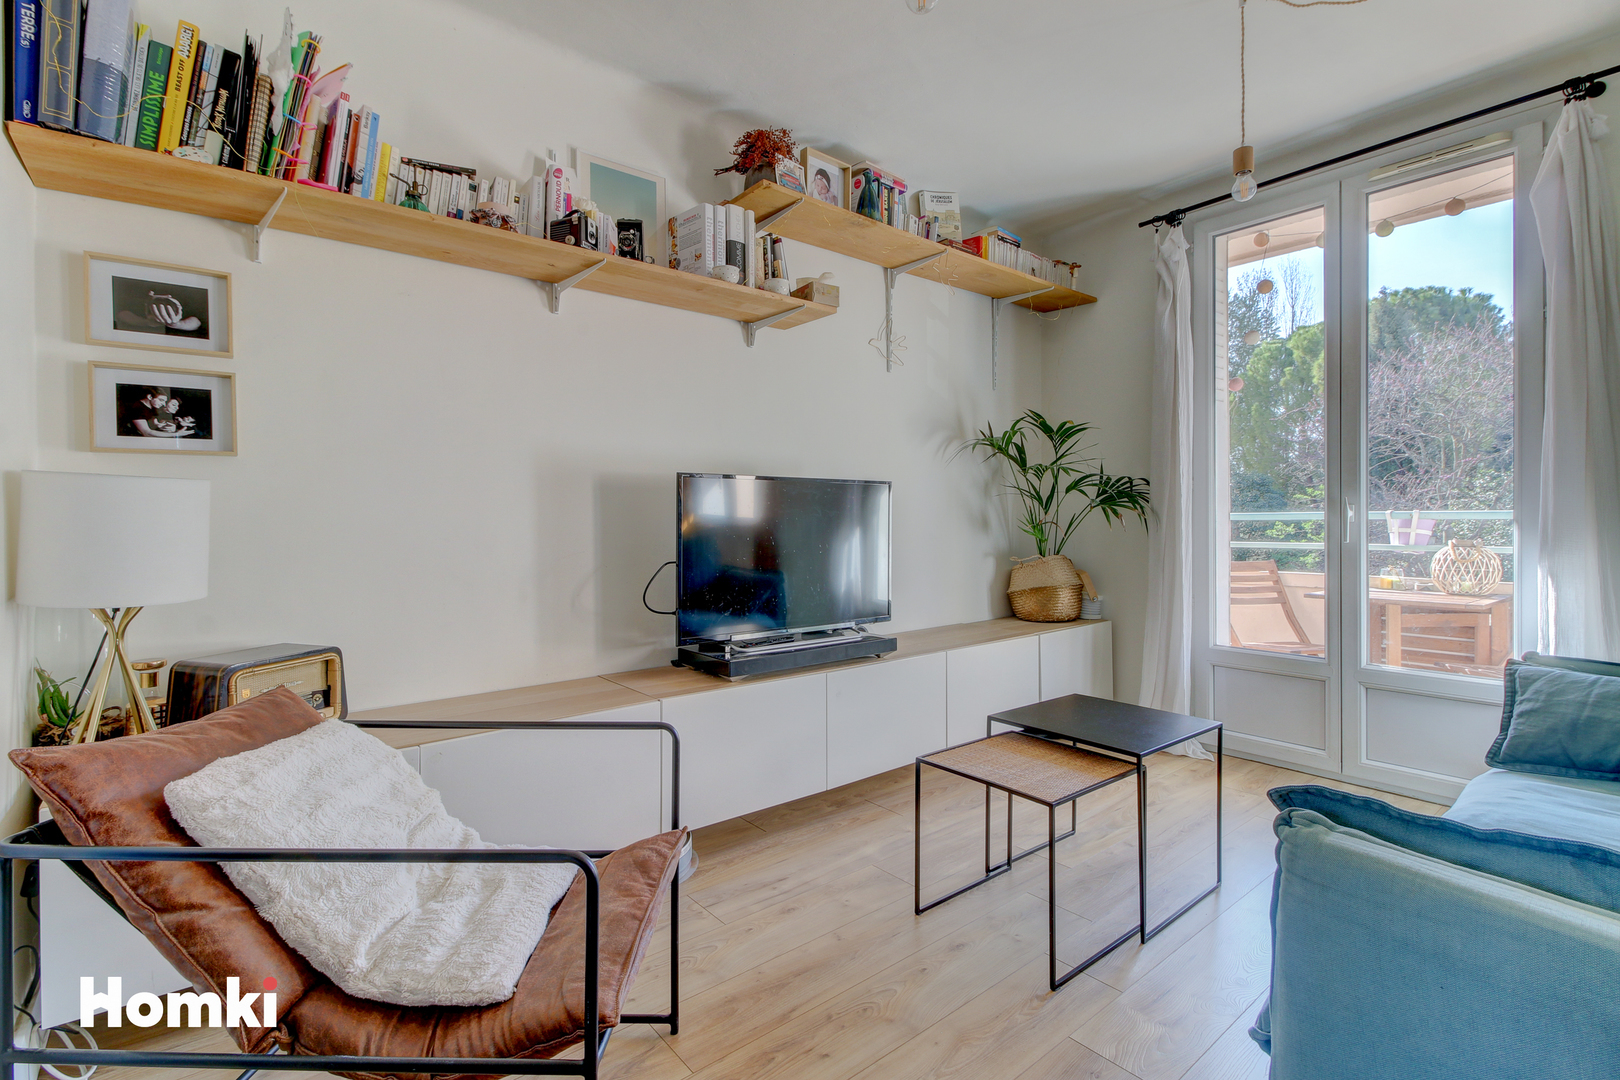 Homki - Vente Appartement  de 66.0 m² à Aix-en-Provence 13100